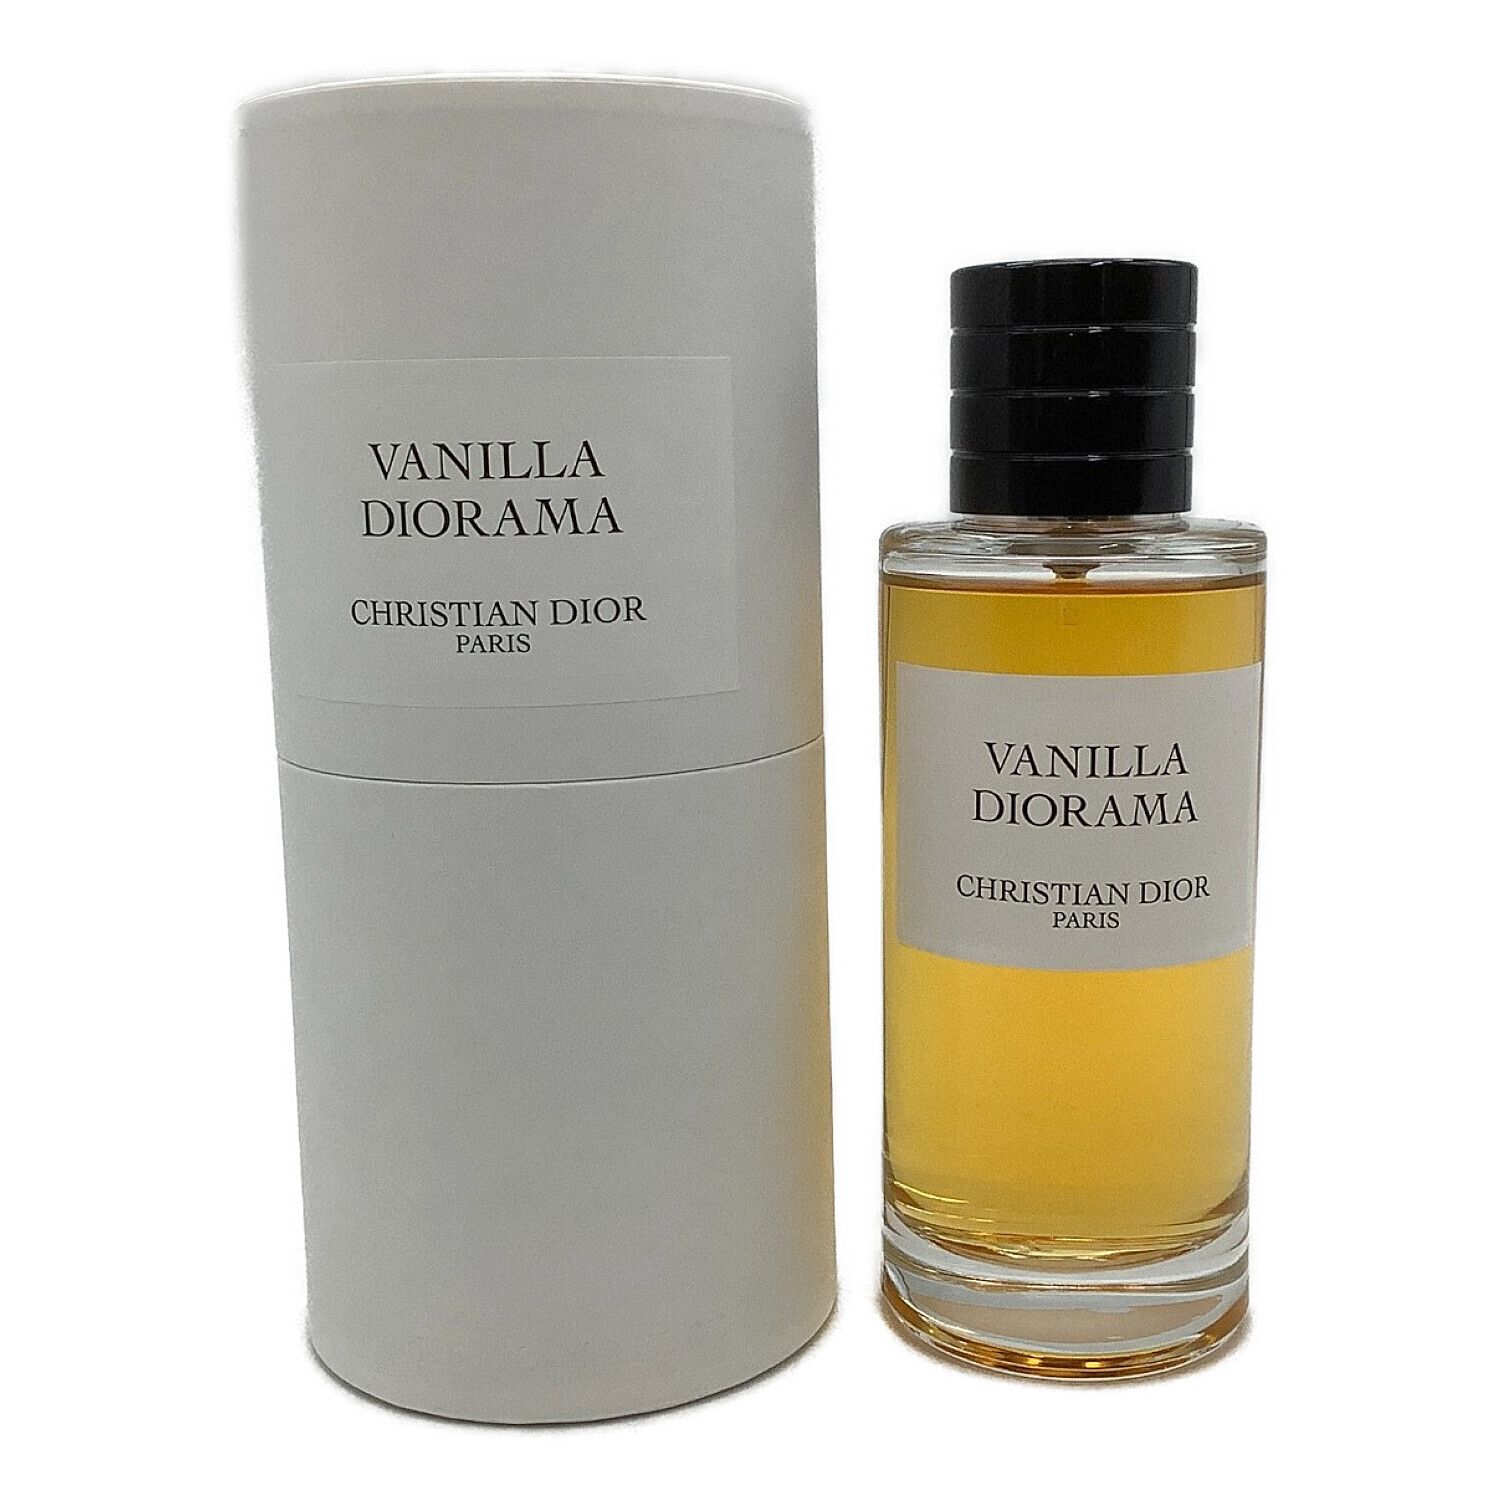 Christian Dior (クリスチャン ディオール) 香水 VANILLA DIORAMA 